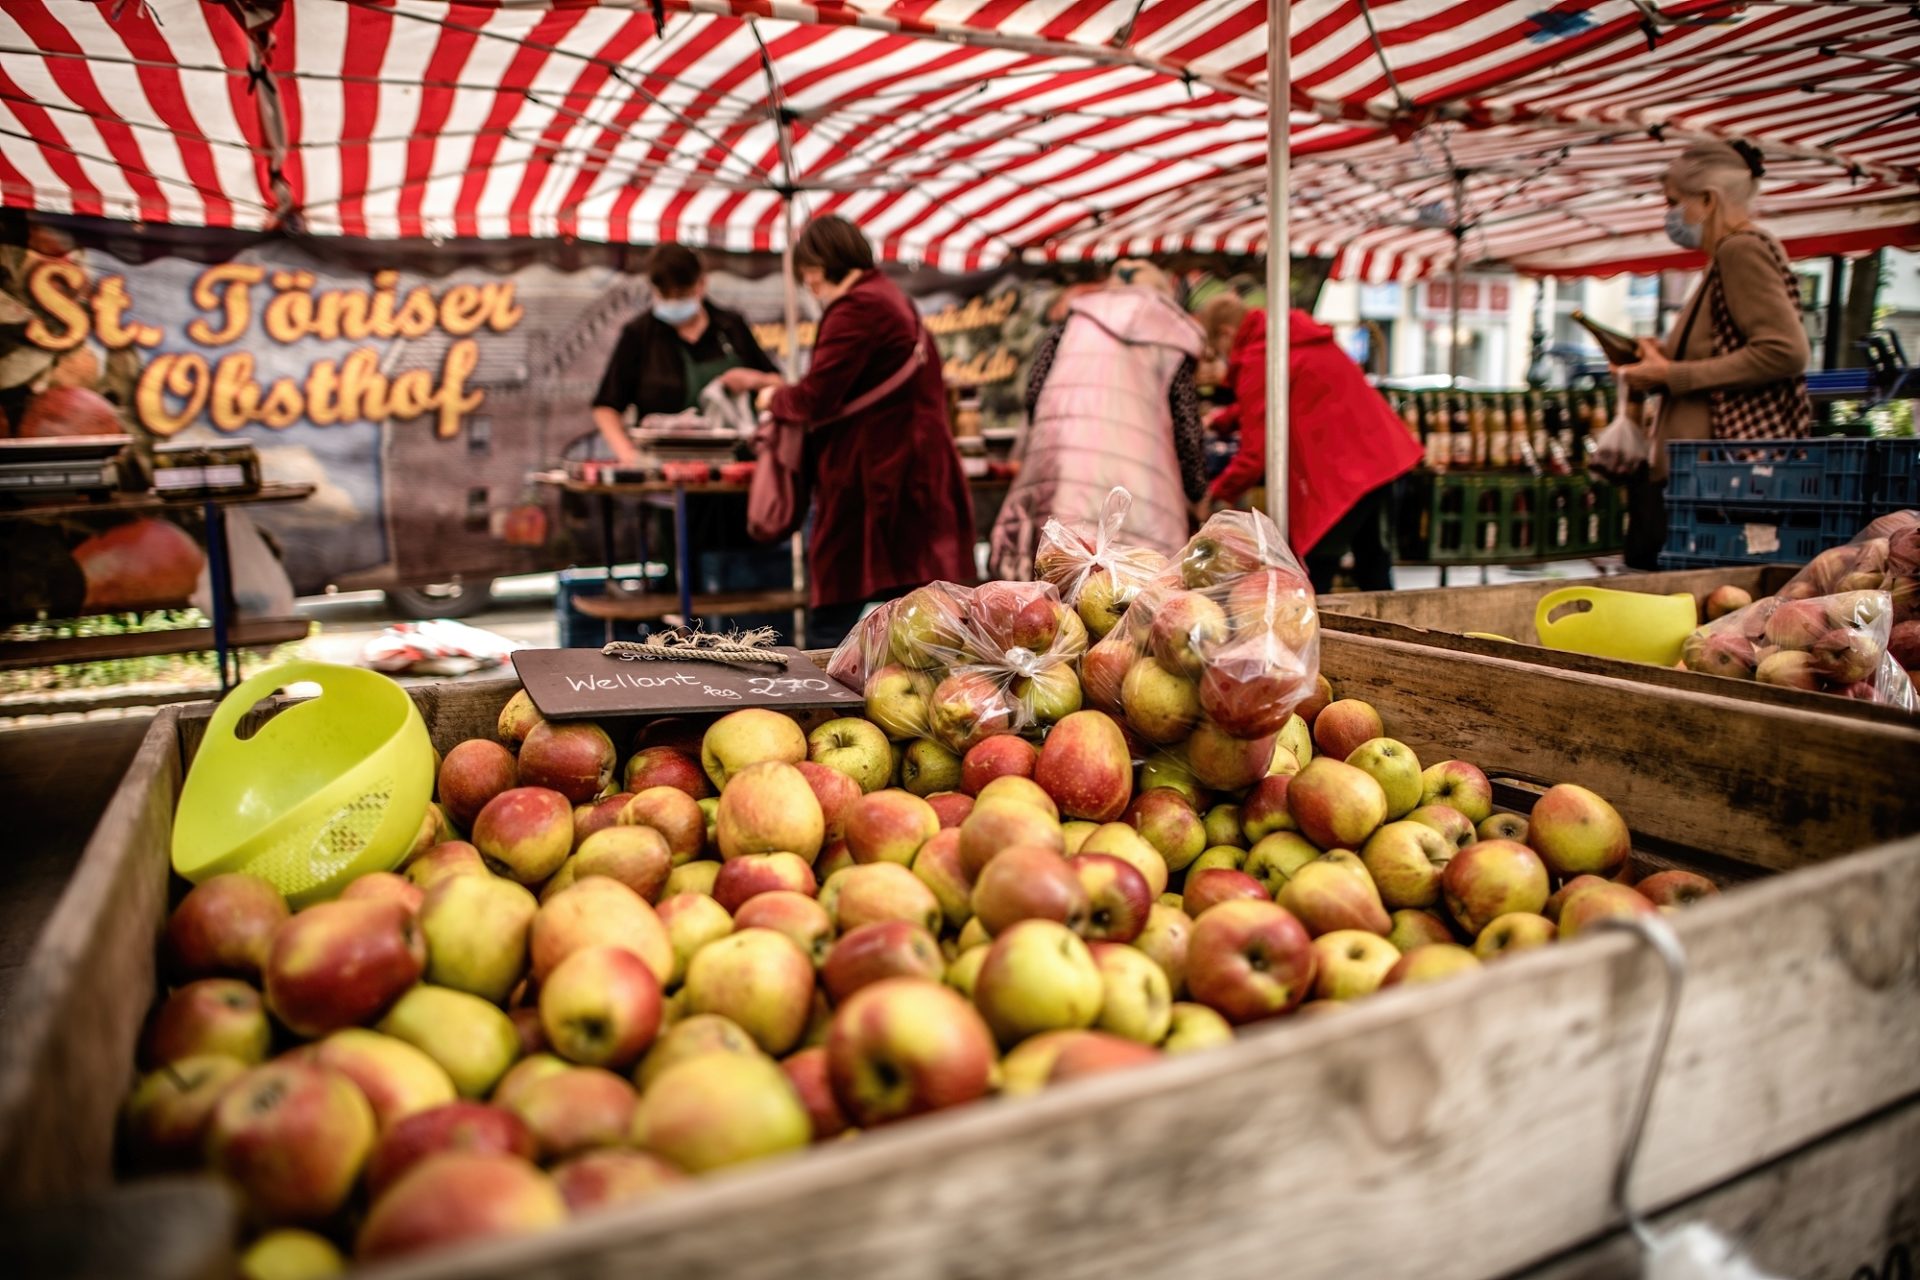 Typisch für einen Bauernmarkt: Die Äpfel sind nicht in Plastik eingeschweißt und genormt, sondern sie locken mit ihrer vollen, natürlichen Pracht. In der Stadt liebt man diese Märkte mit Produkten ausschließlich aus der Region. Foto: Andreas Endermann